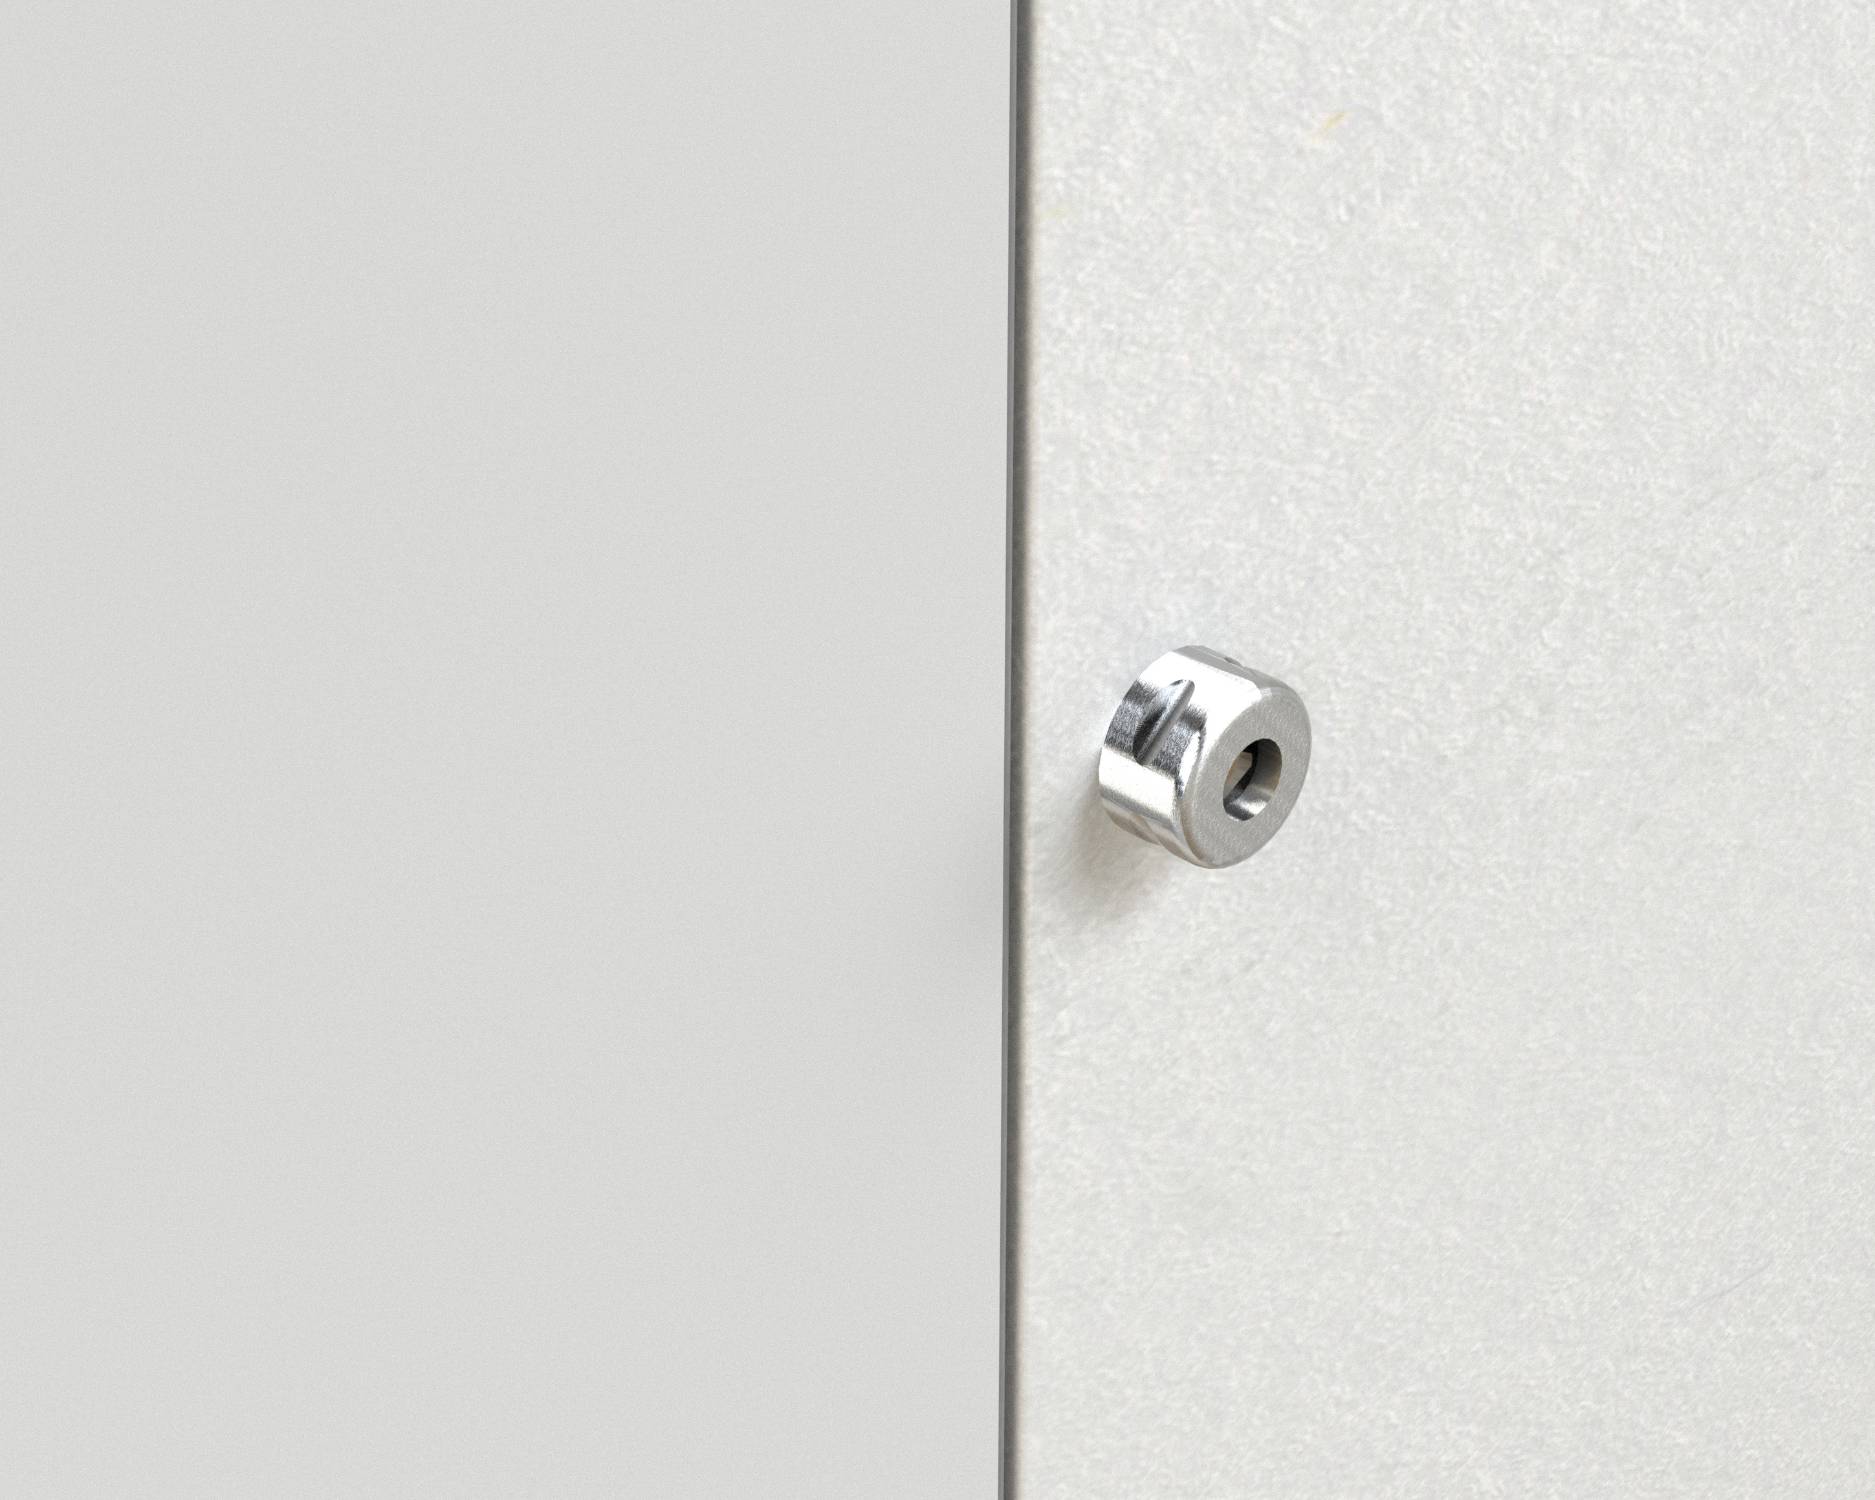 Quadra+ Lift Shaft / Escape Door - Concealed Riser Doorset Access Solutions